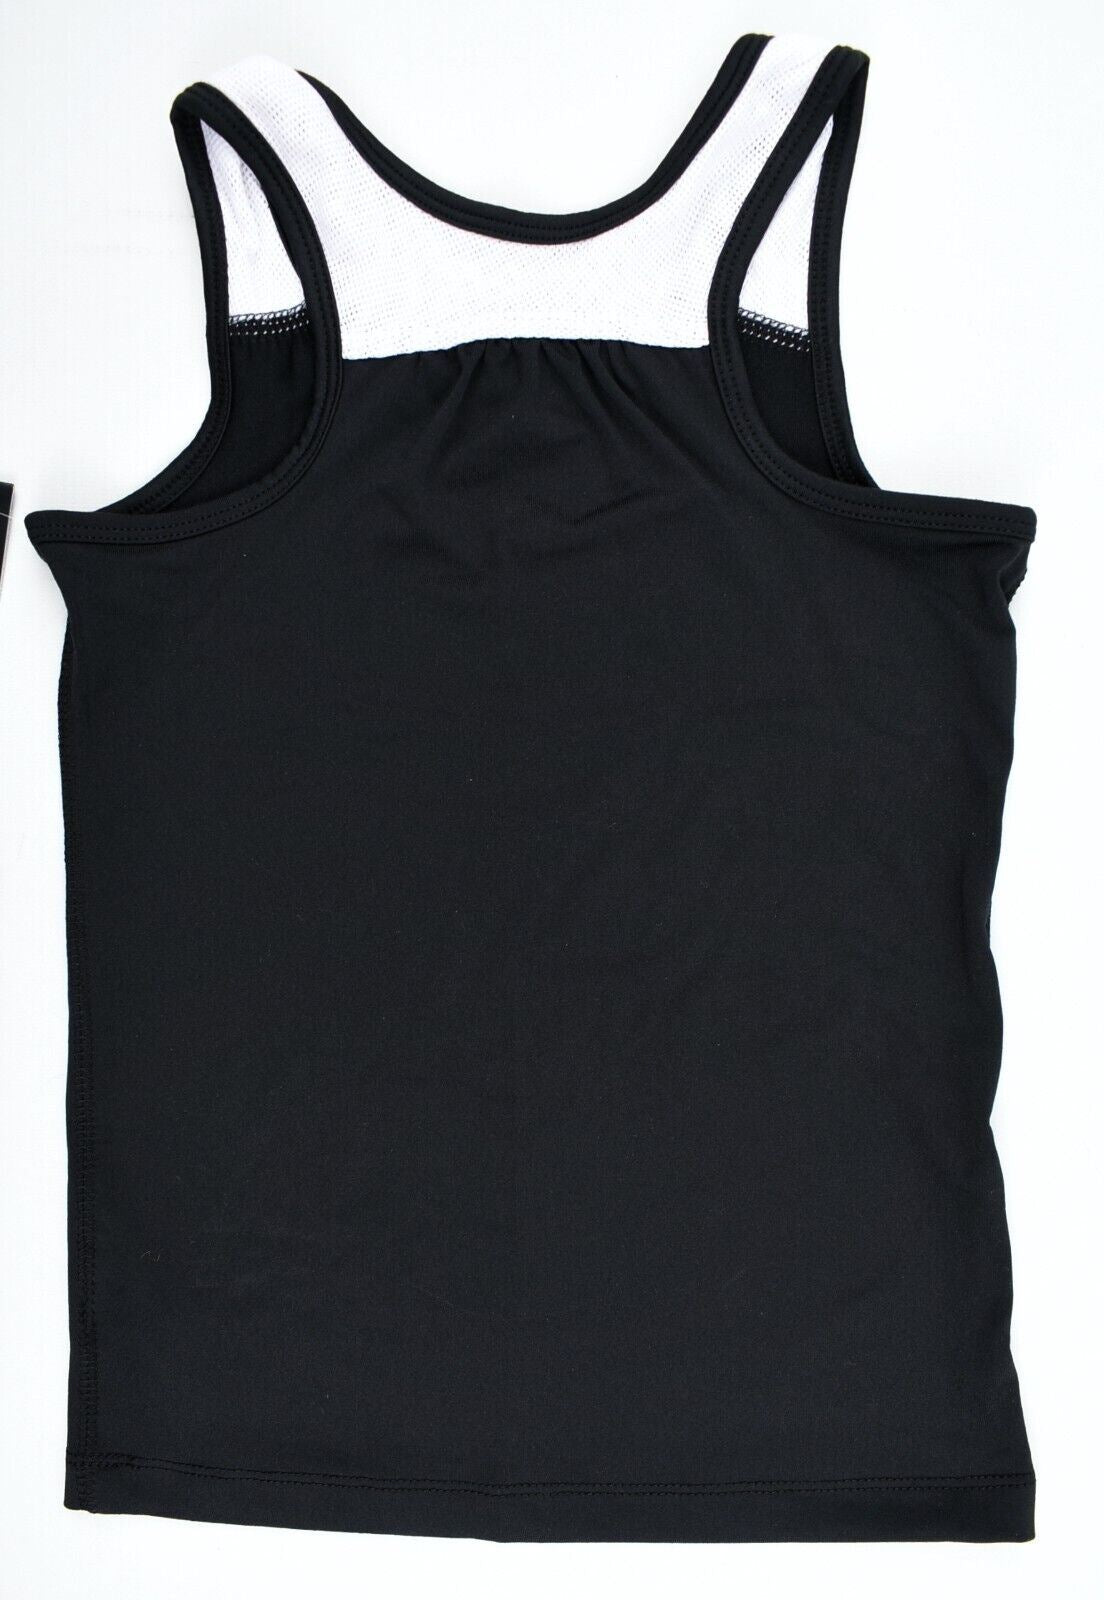 NIKE DRI-FIT Girls' Activewear Tank Top, Black/White, size 5 years